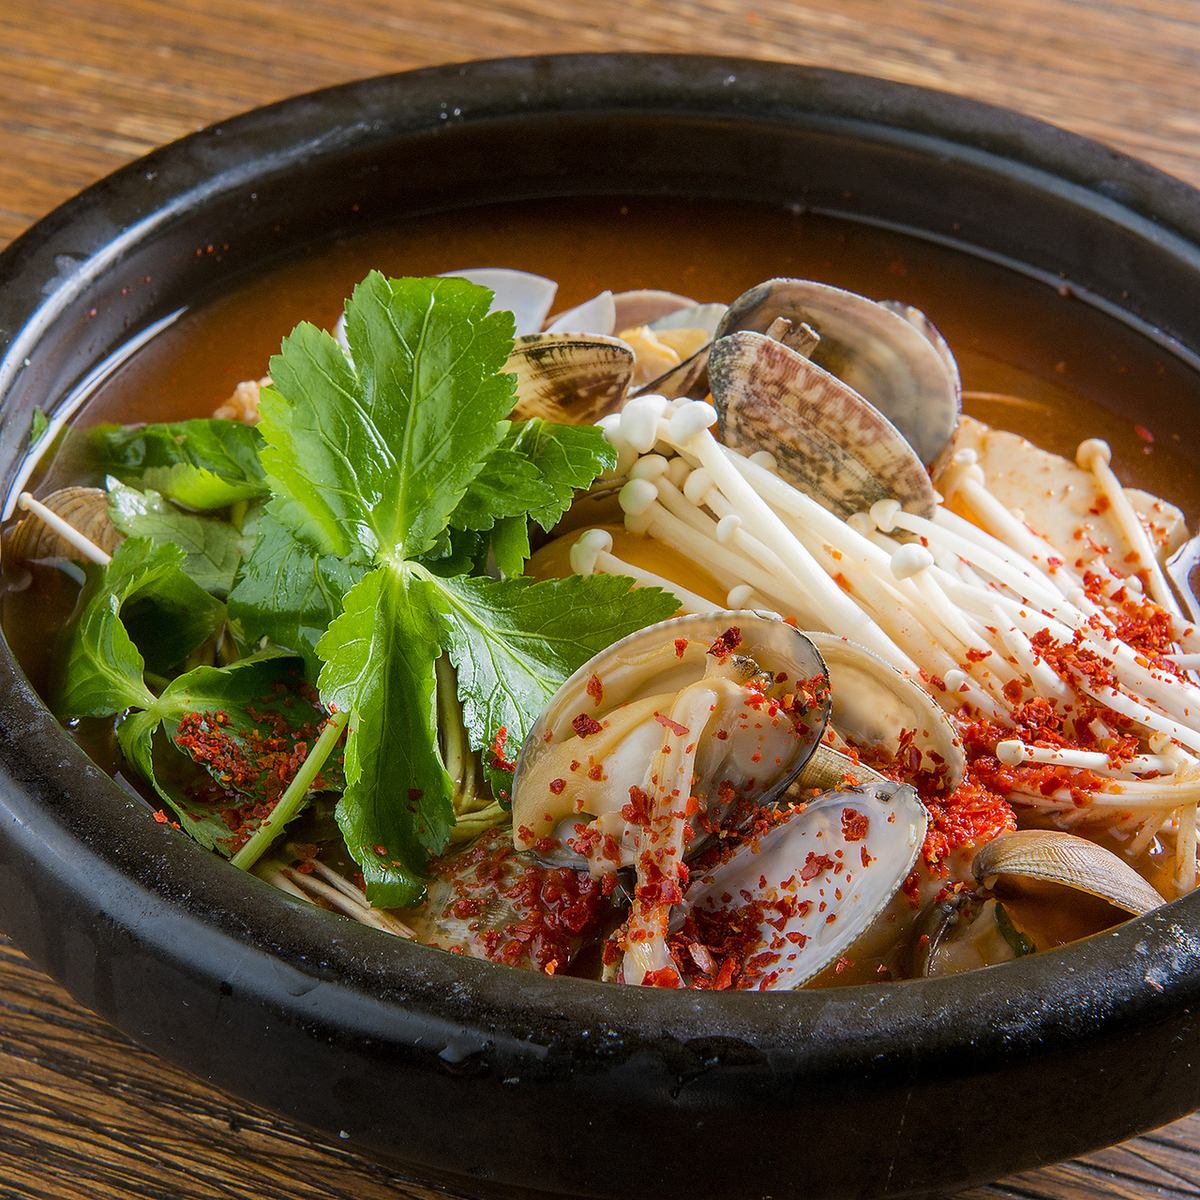 輕鬆享用Jjigae，Samgyetang和Dak-galbi等受歡迎的韓國美食！